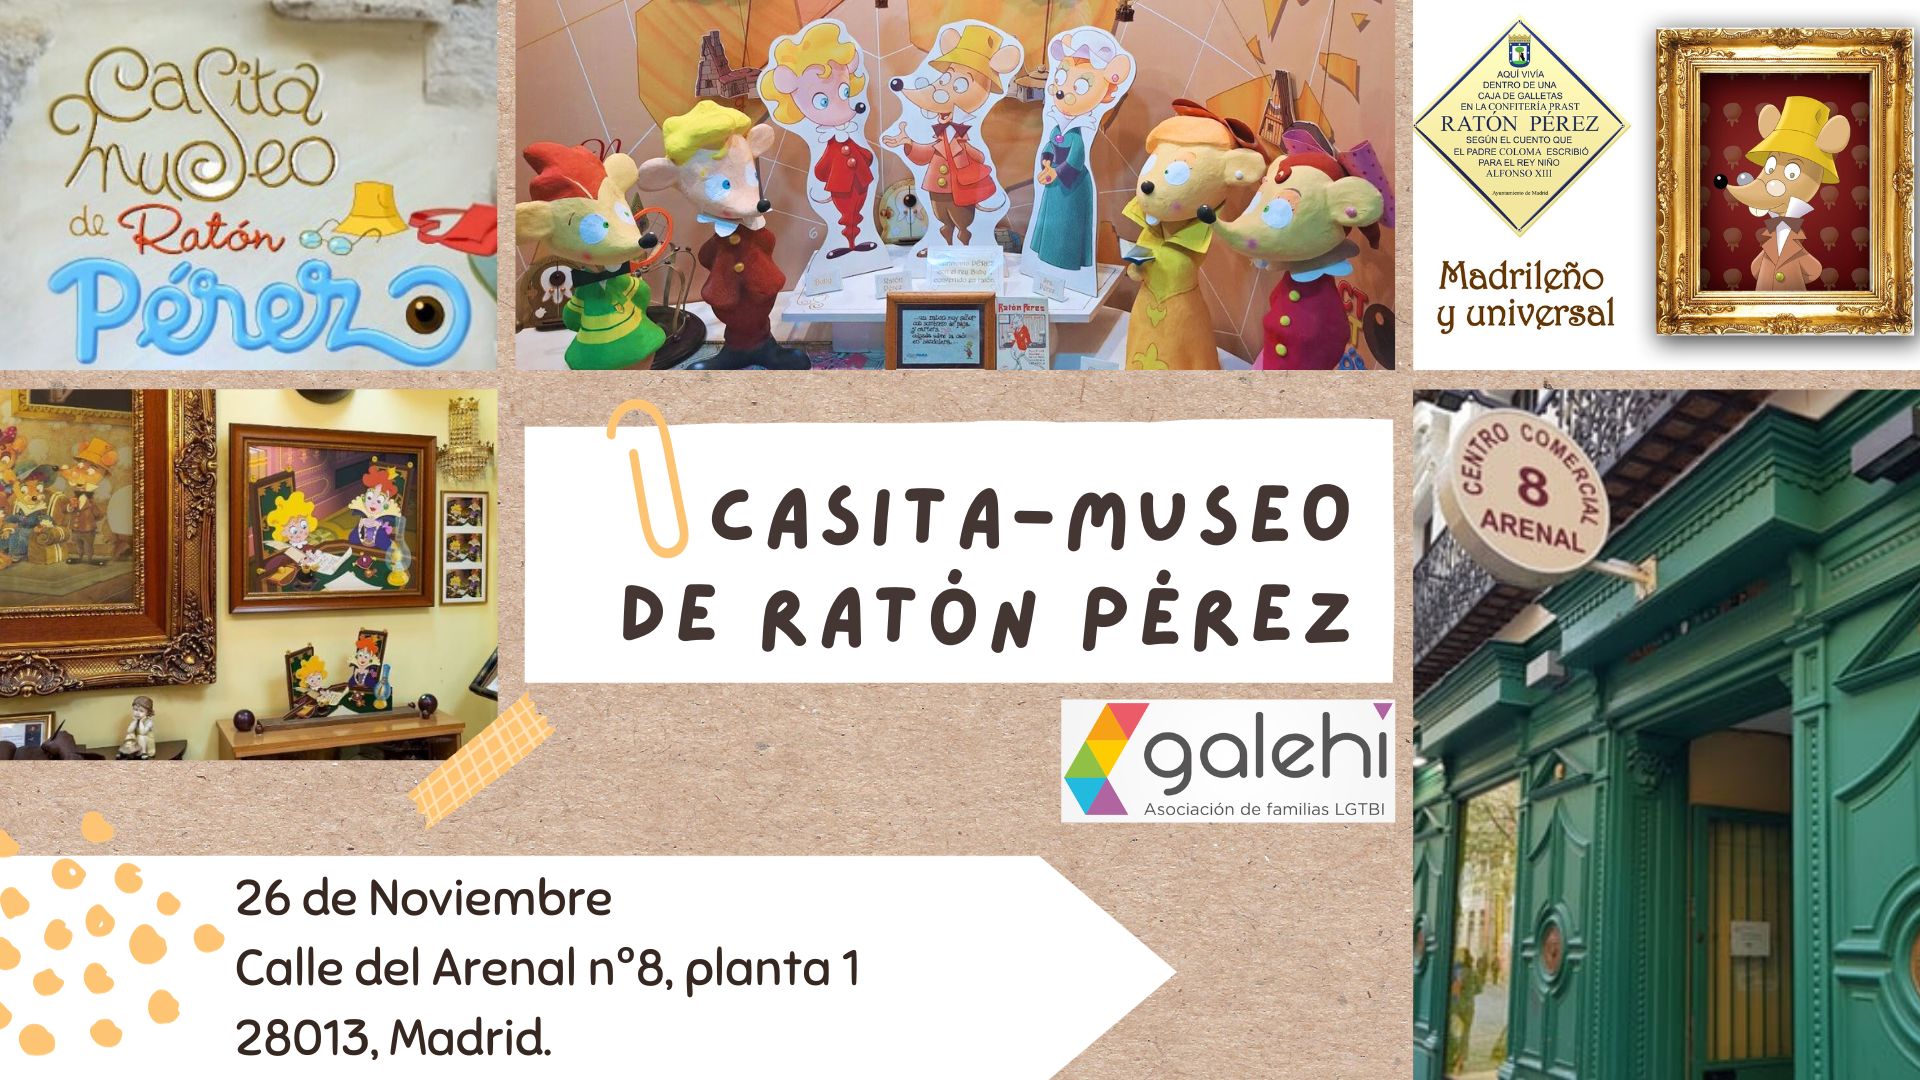 El ratoncito Pérez ya tiene museo, Ocio y cultura